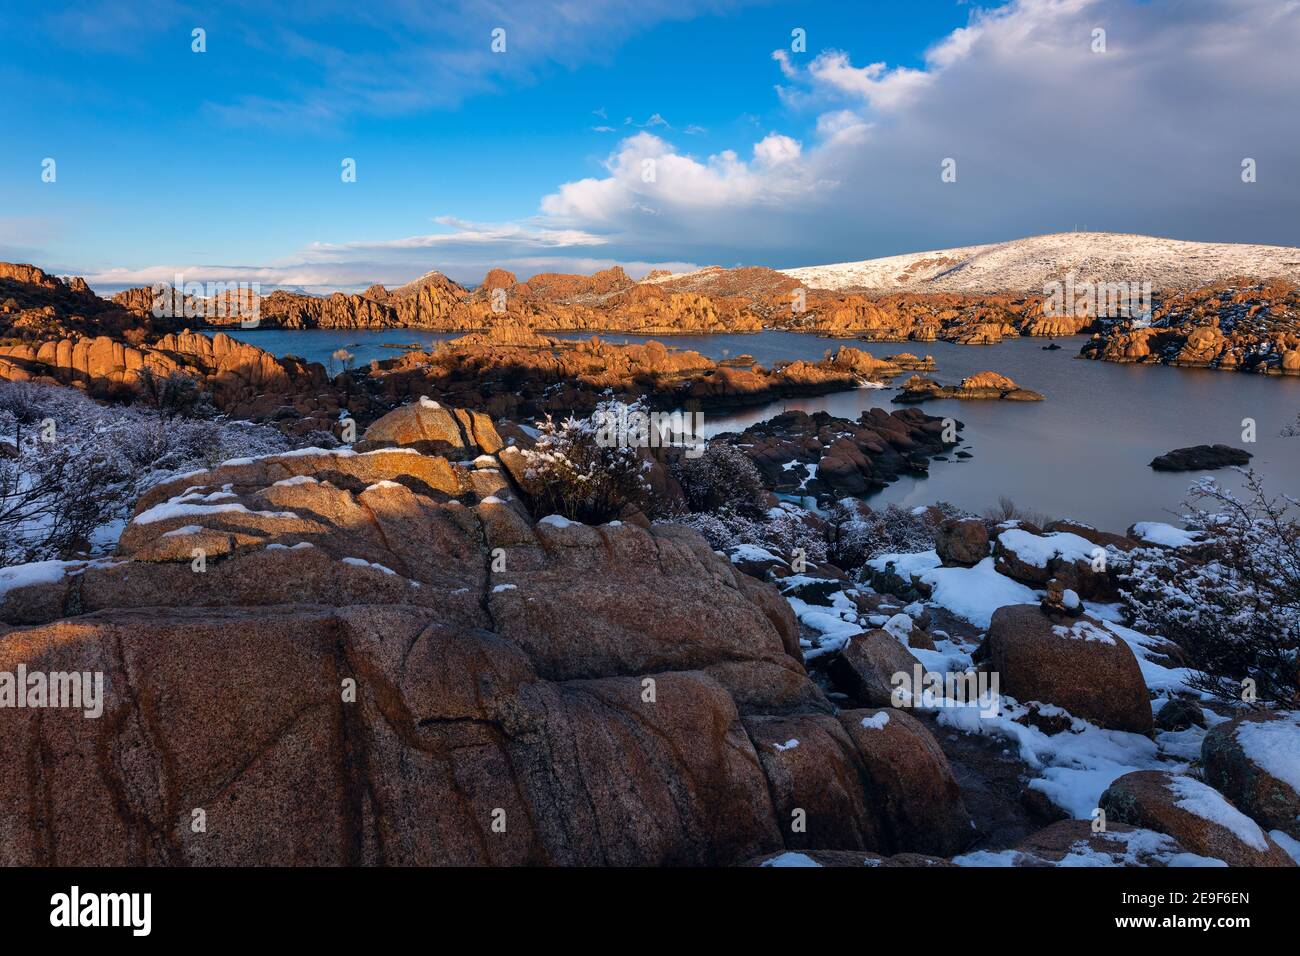 Scenic winter landscape with snow at Watson Lake in the Granite Dells, Prescott, Arizona Stock Photo